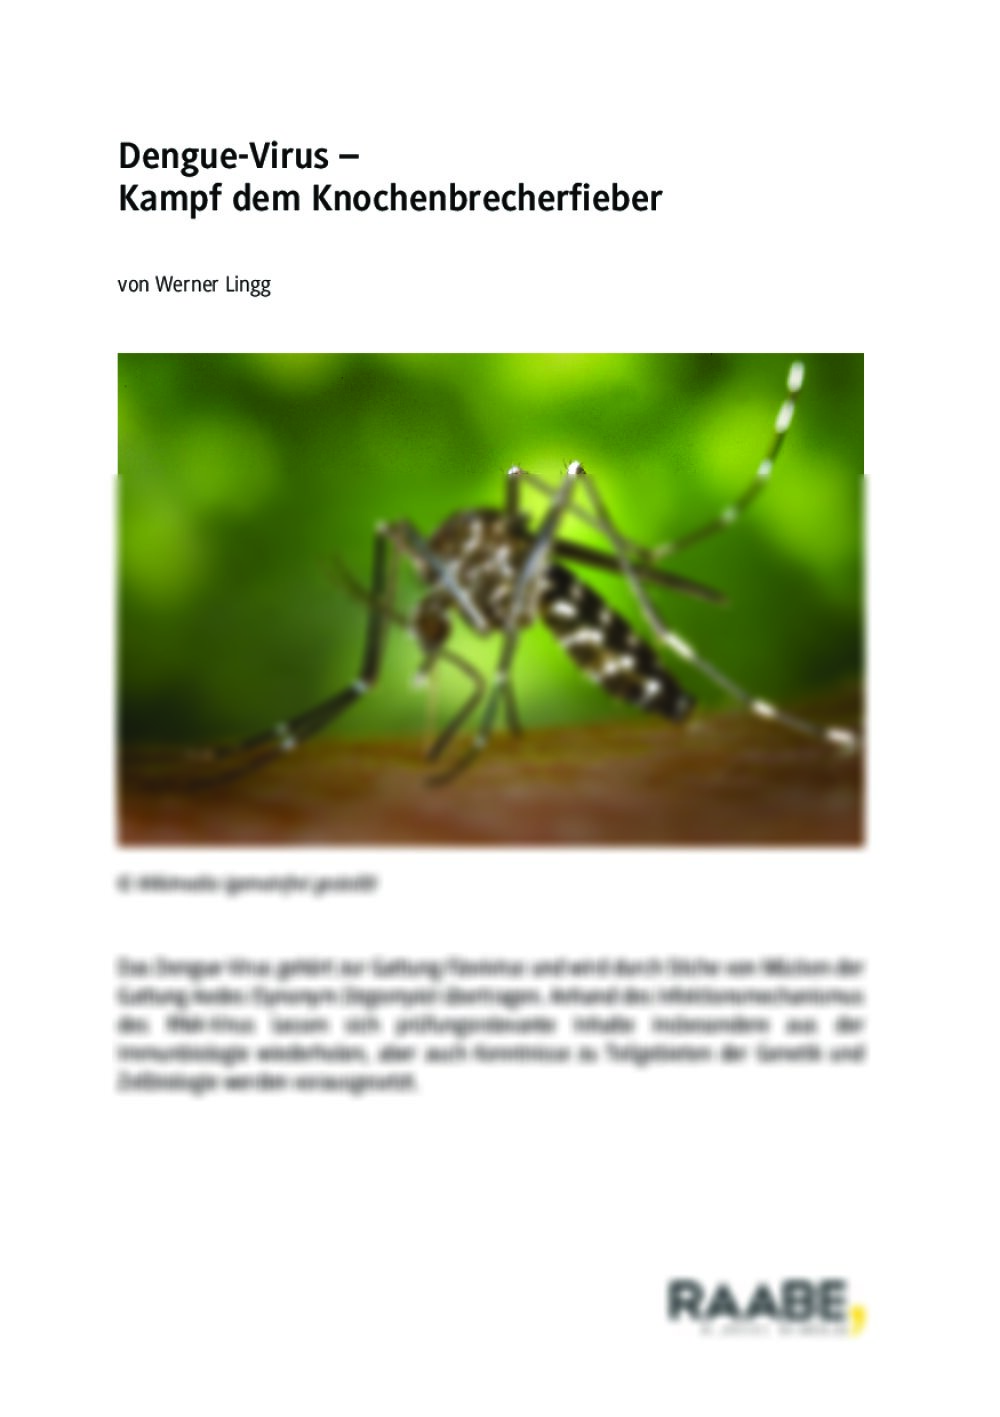 Dengue-Virus: Kampf dem Knochenbrecherfieber - Seite 1